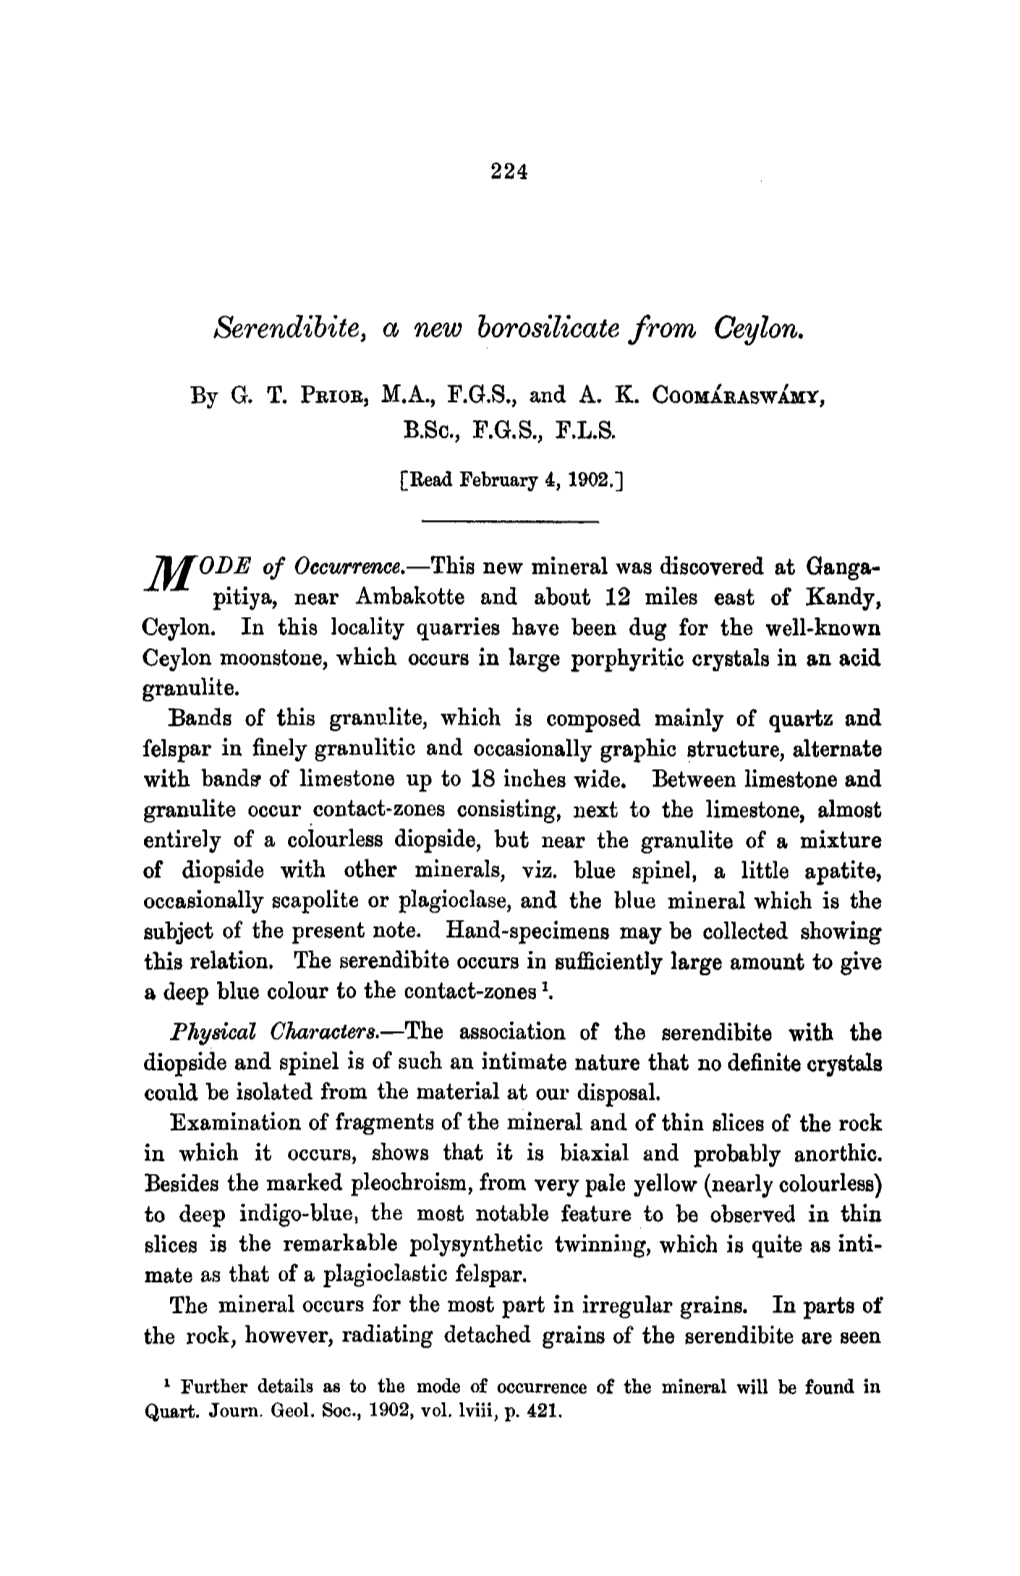 Serendibite, a New Borosilicate from Ceylon